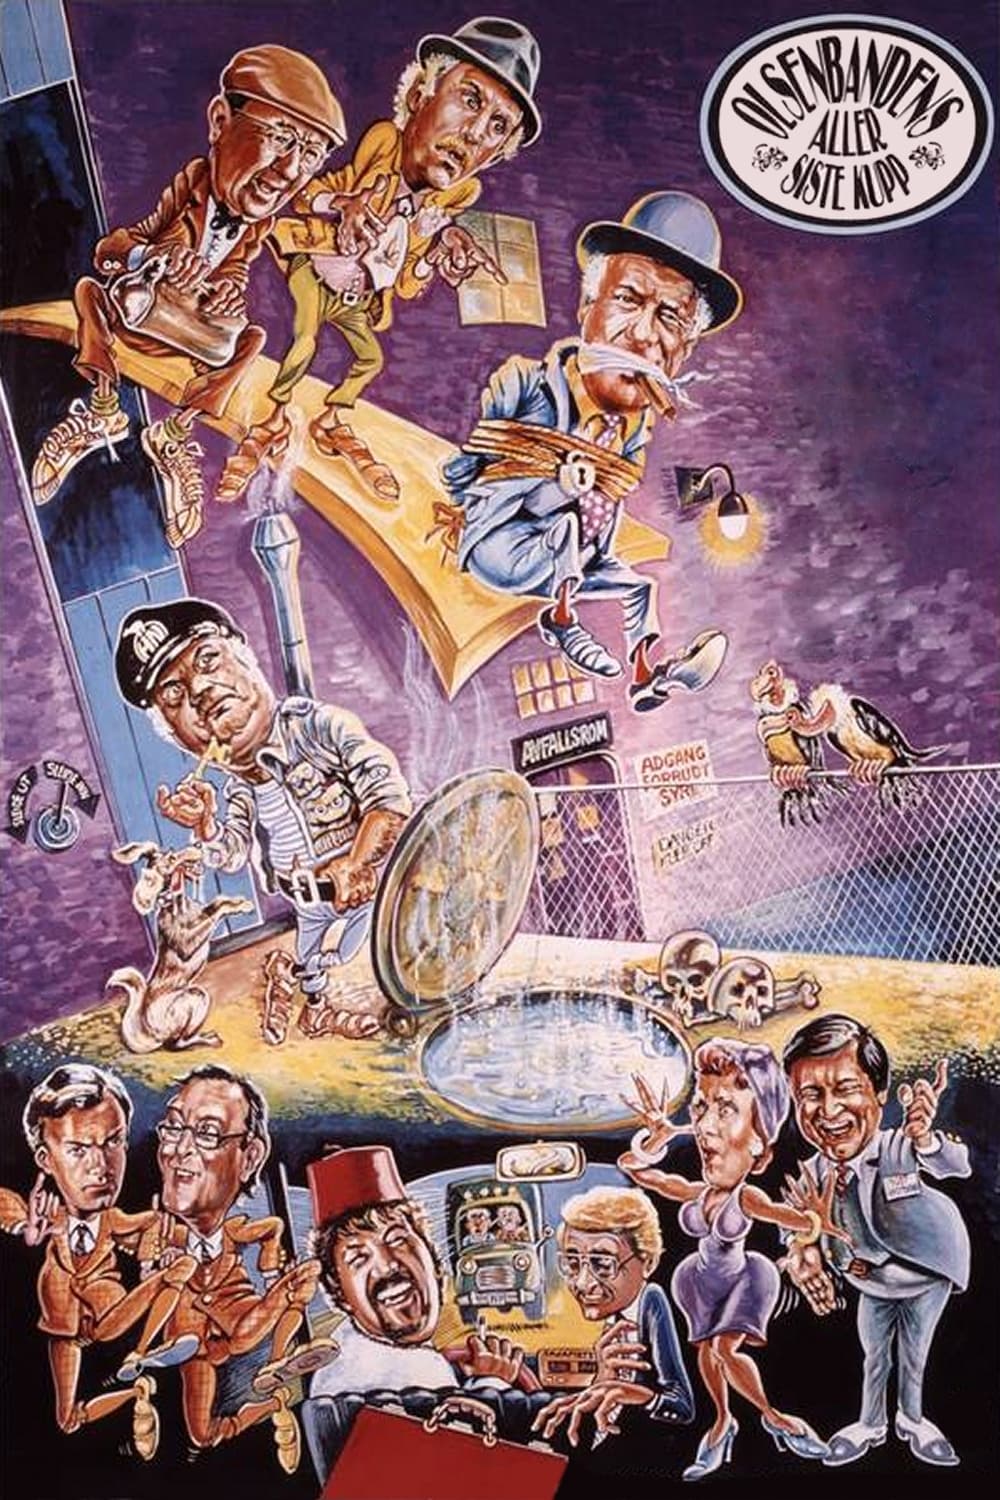 Olsenbandens aller siste kupp (1982)